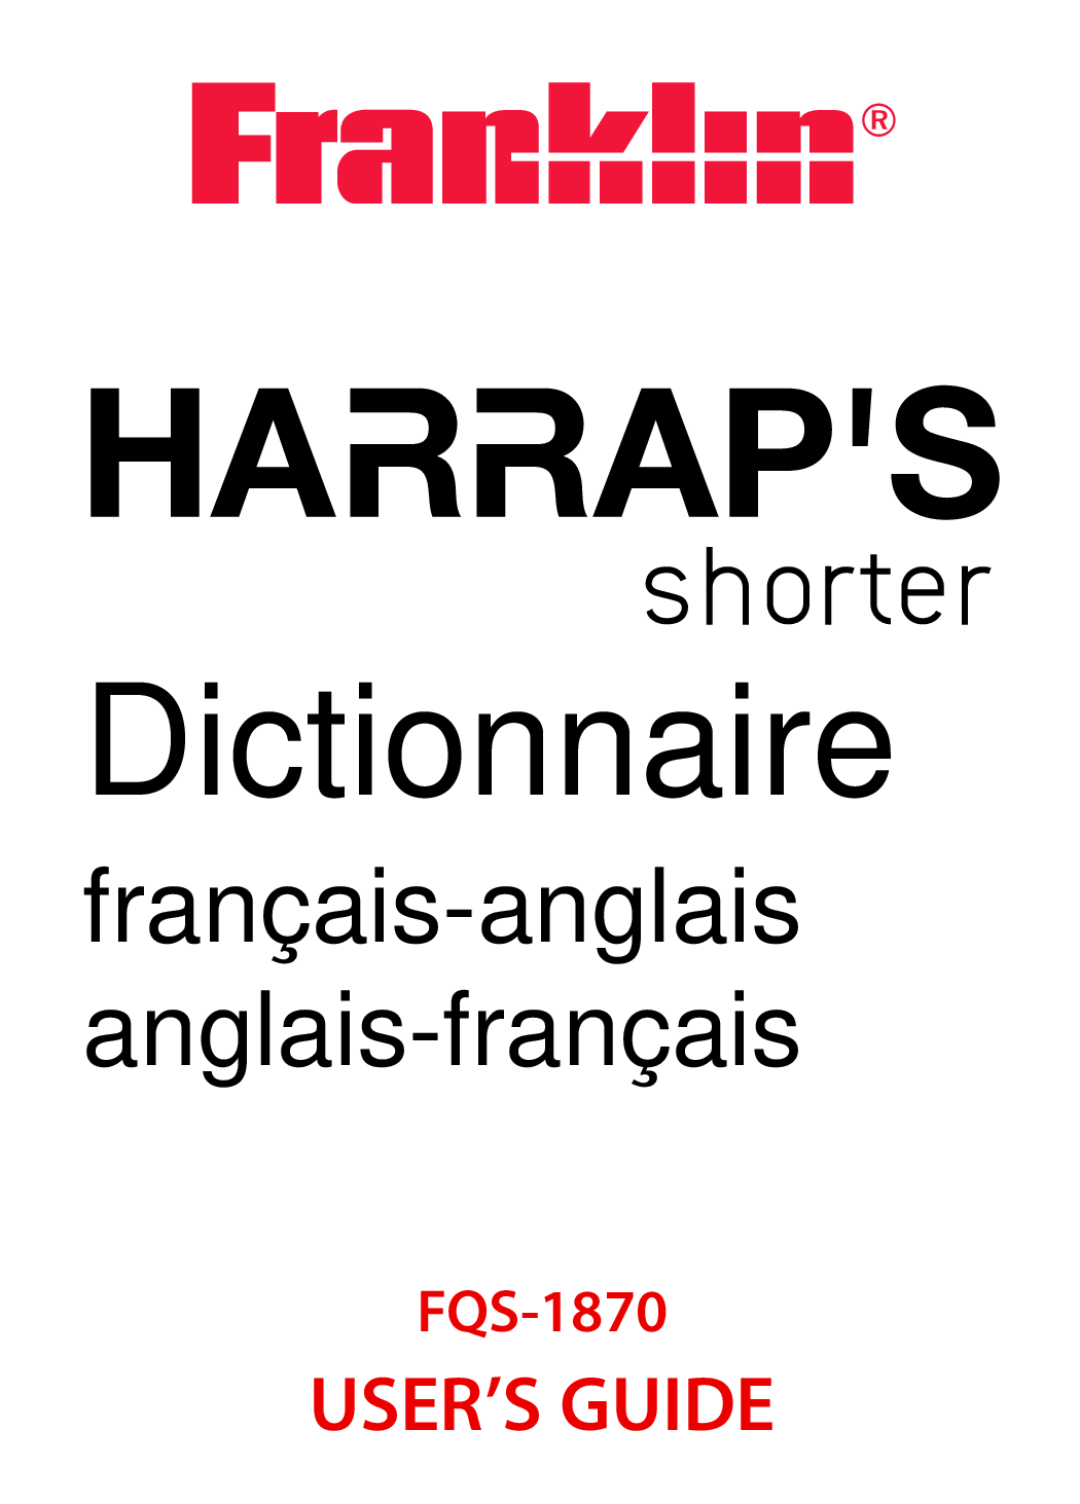 Franklin FQS-1870 manual Dictionnaire, français-anglais anglais-français, User’S Guide 